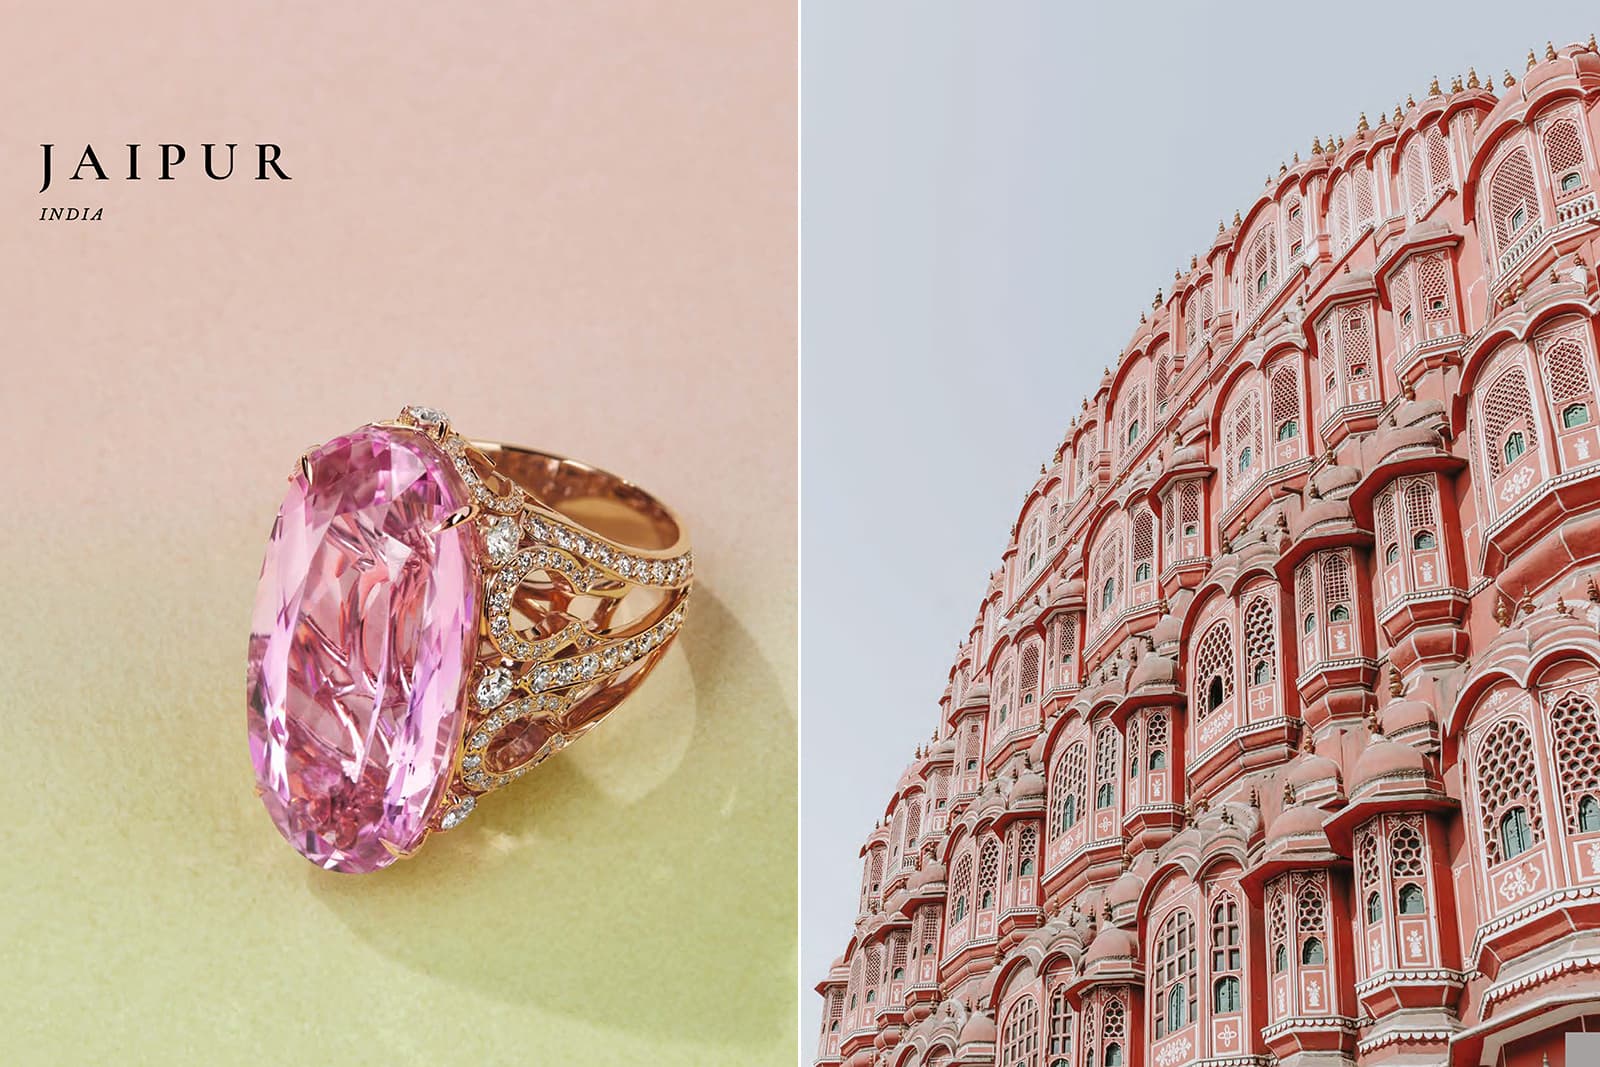 Кольцо Boodles Jaipur с розовым морганитом 21 карат из коллекции высокого ювелирного искусства «Вокруг света за 16 дней», вдохновленное знаменитым «розовым дворцом» Хава-Махал в Джайпуре, Индия